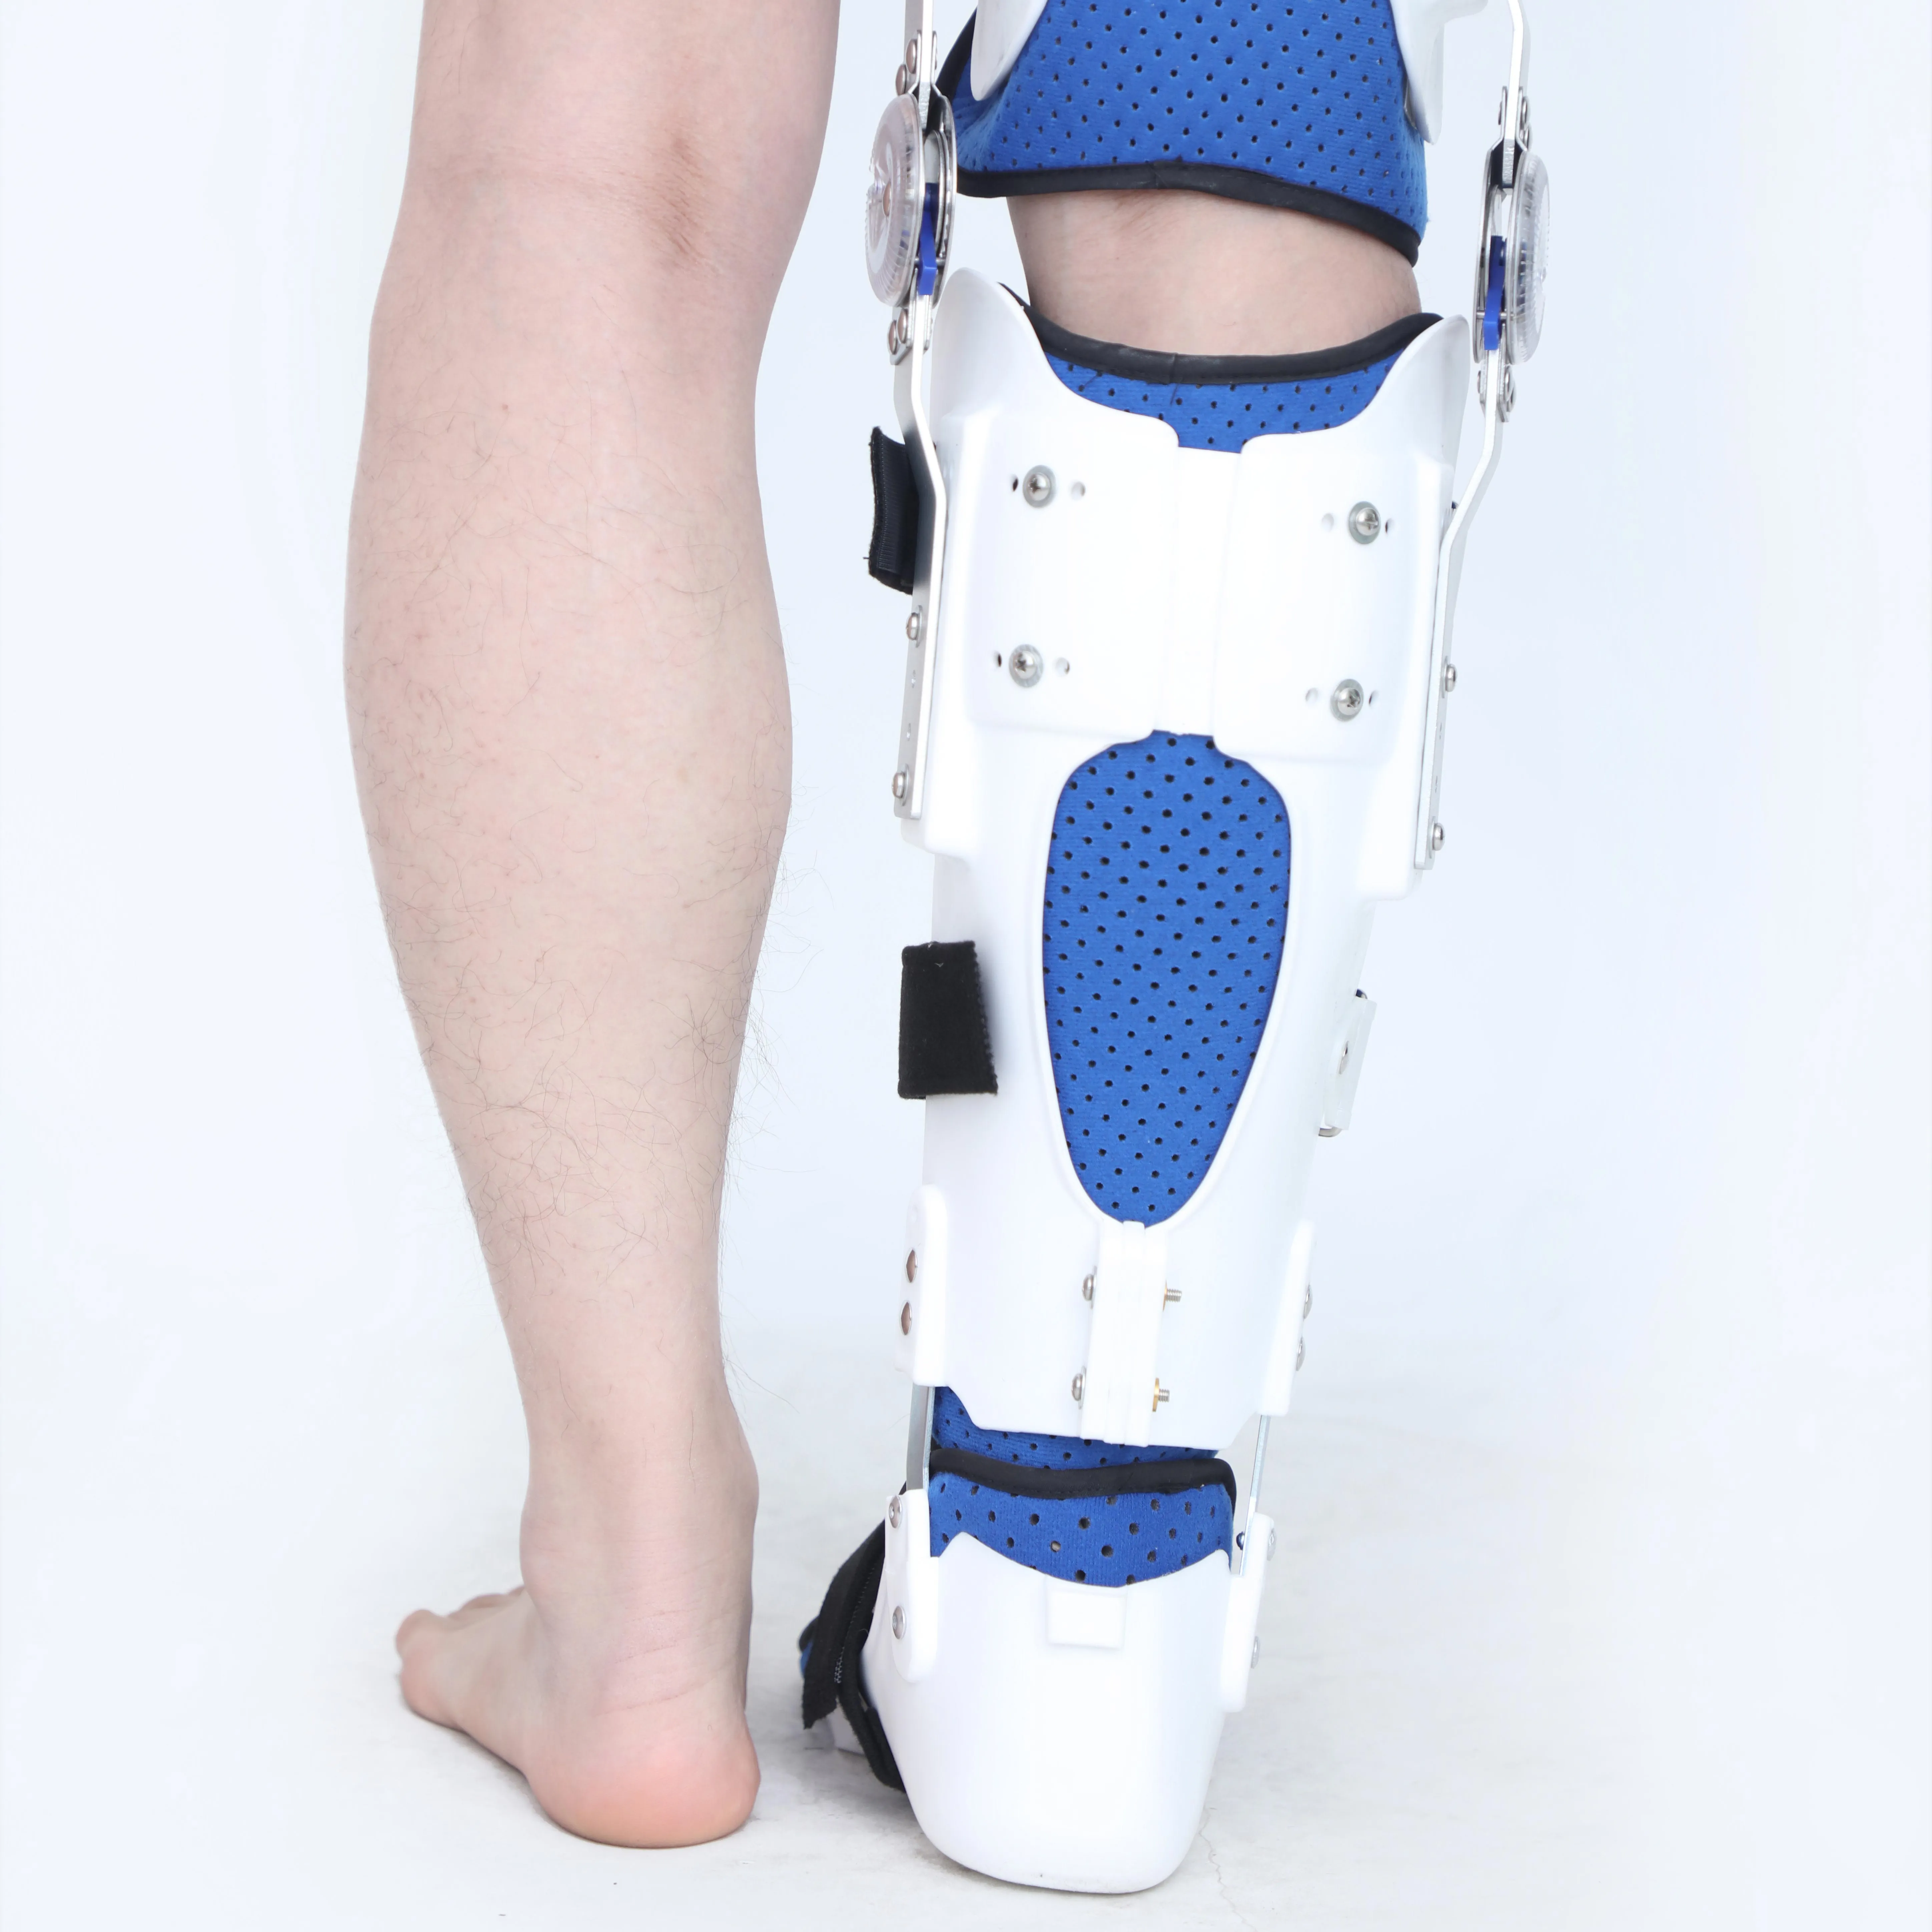 OrthoCare Medical de alta calidad, tamaño libre, izquierda/derecha, 10 grados, rodilla, tobillo, pie, ortesis, período de recuperación fijo después de la operación